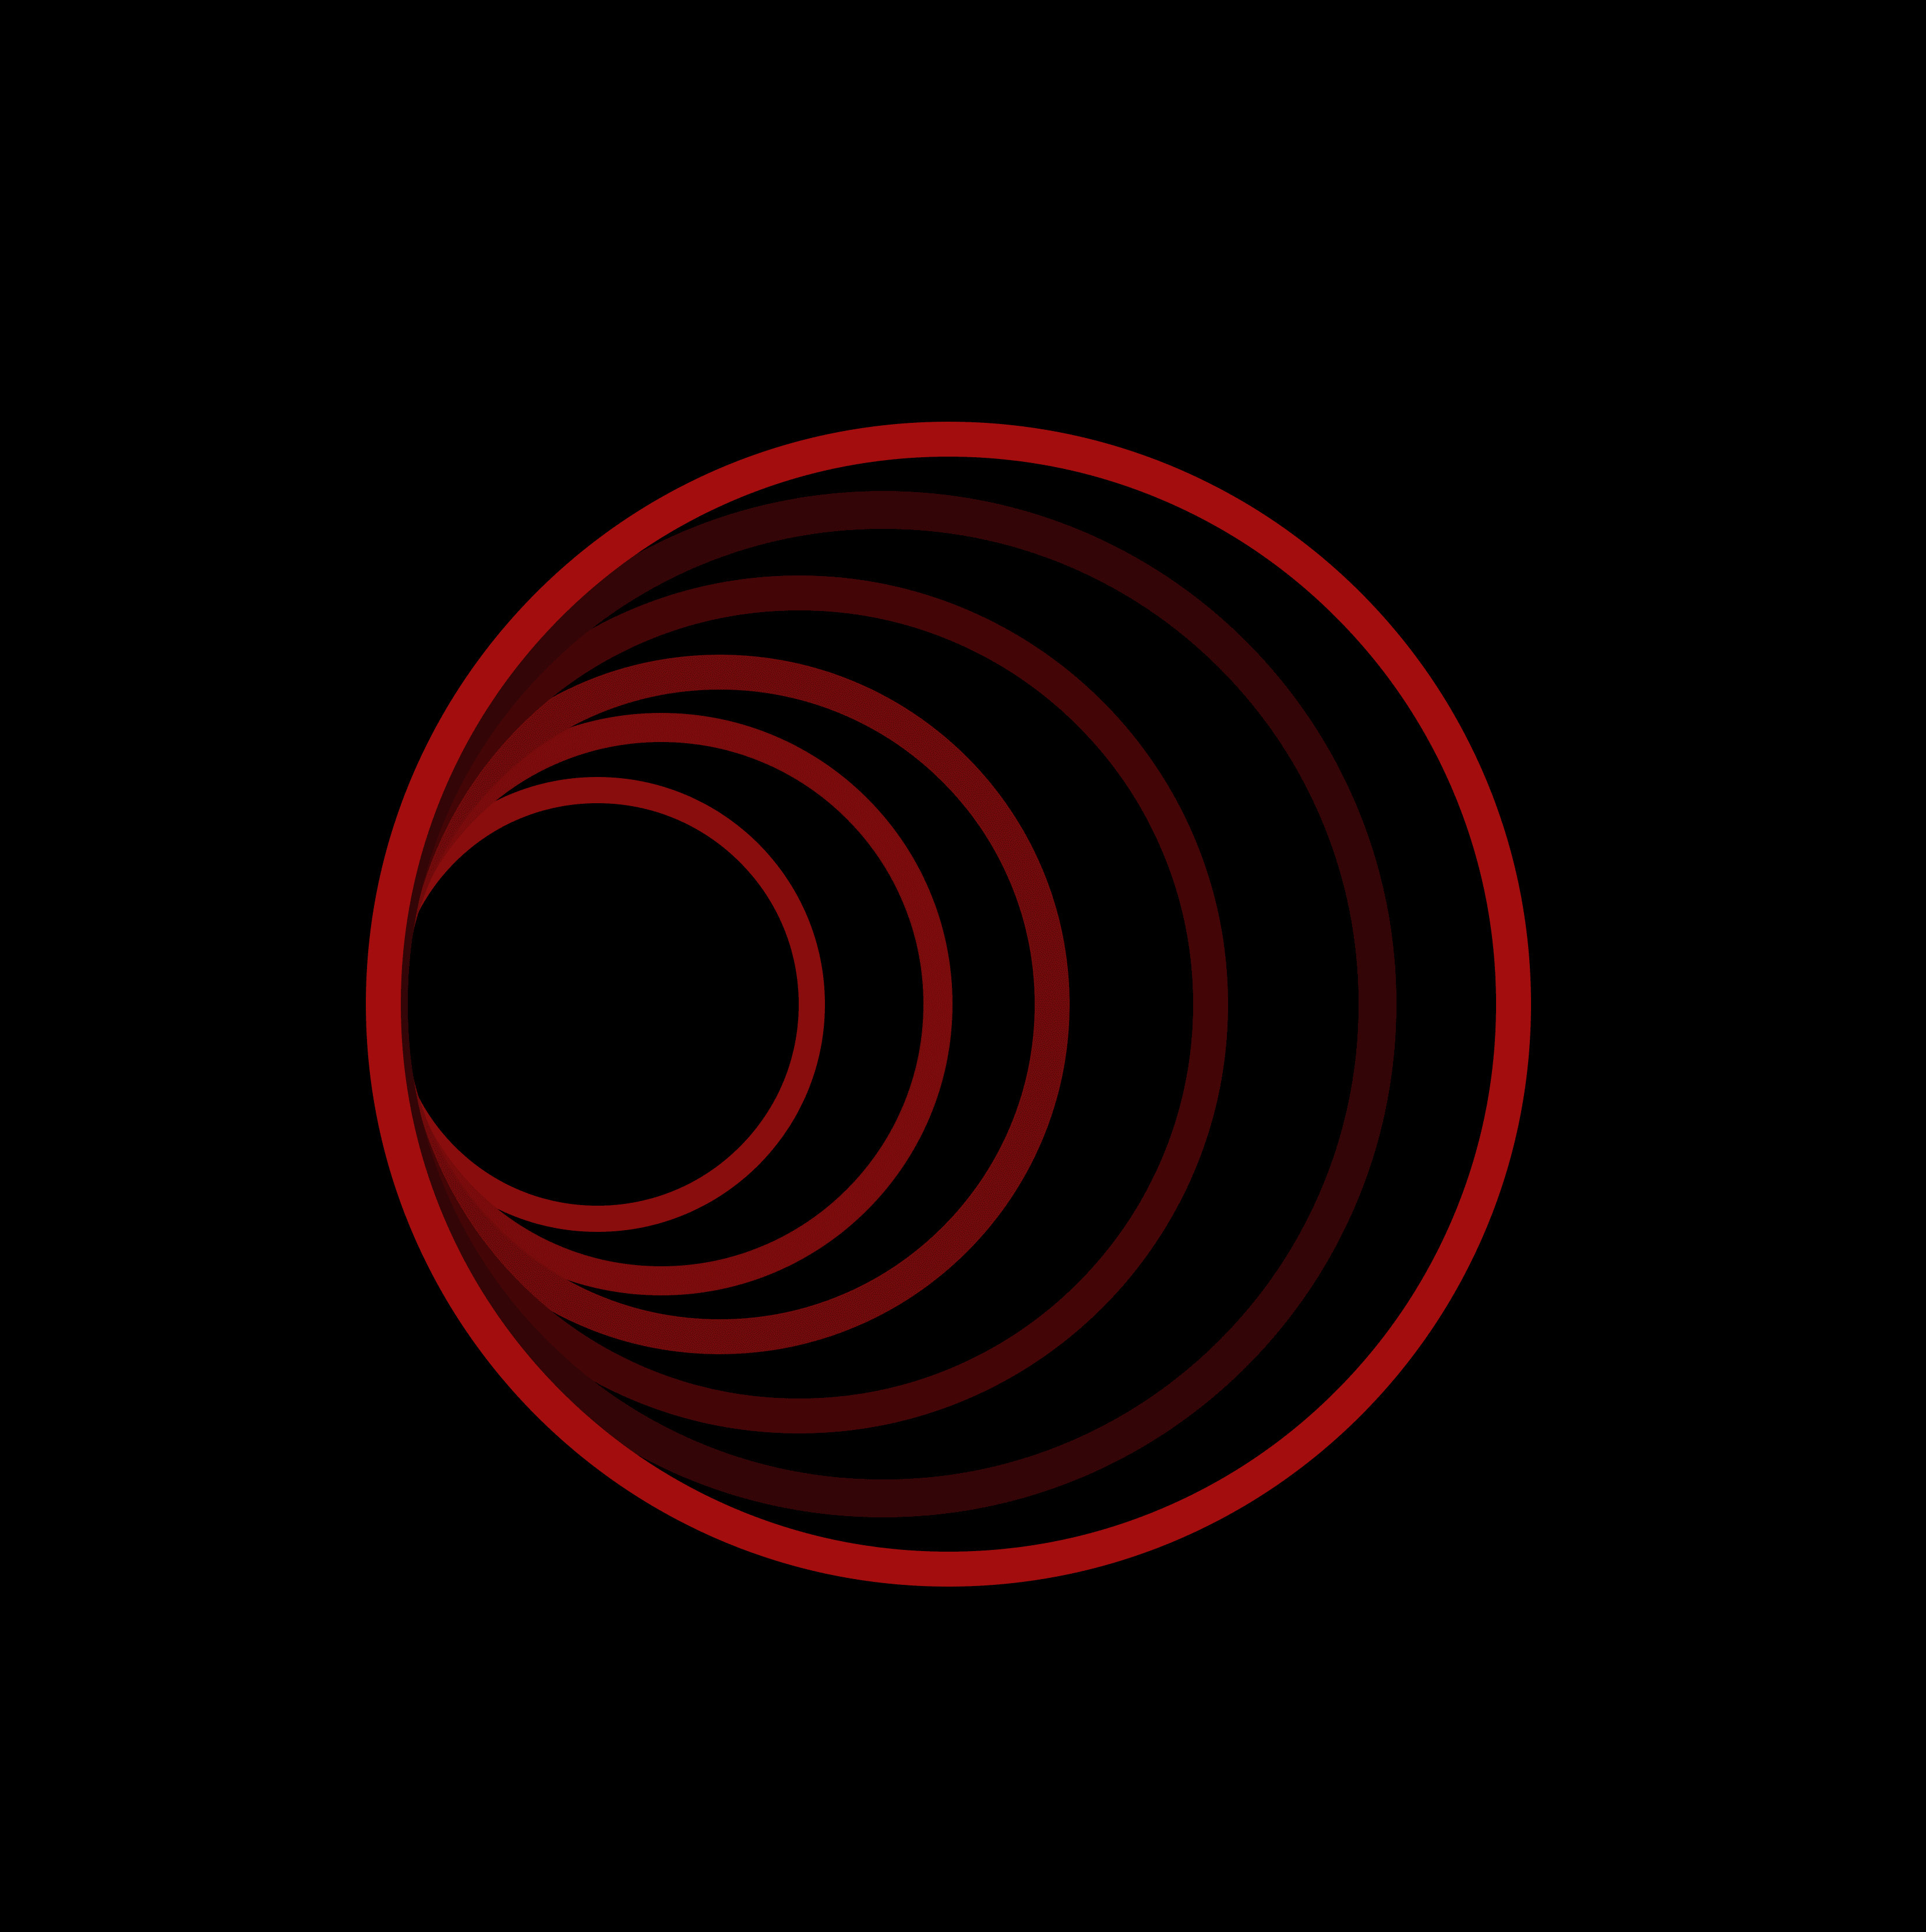 Red-Circle